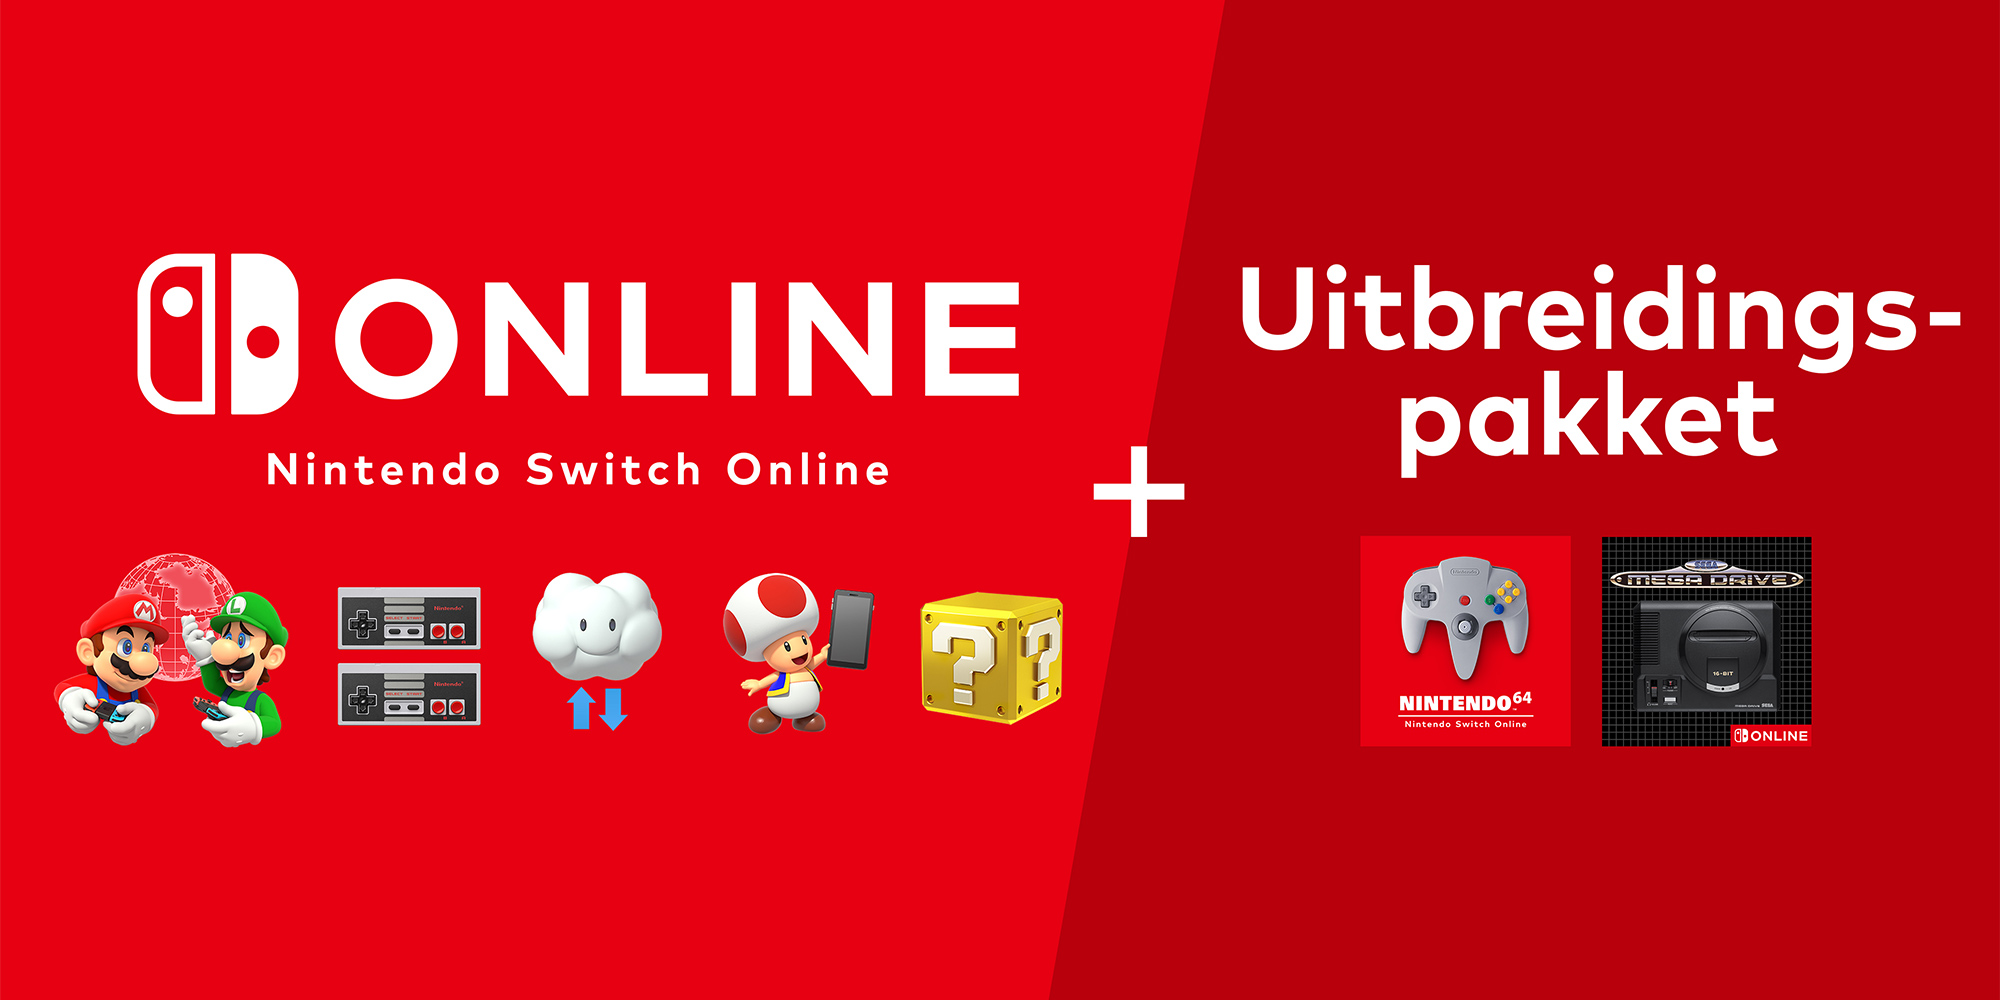 Prijzen en releasedatum voor het Nintendo Switch Online-uitbreidingspakket zijn bekend